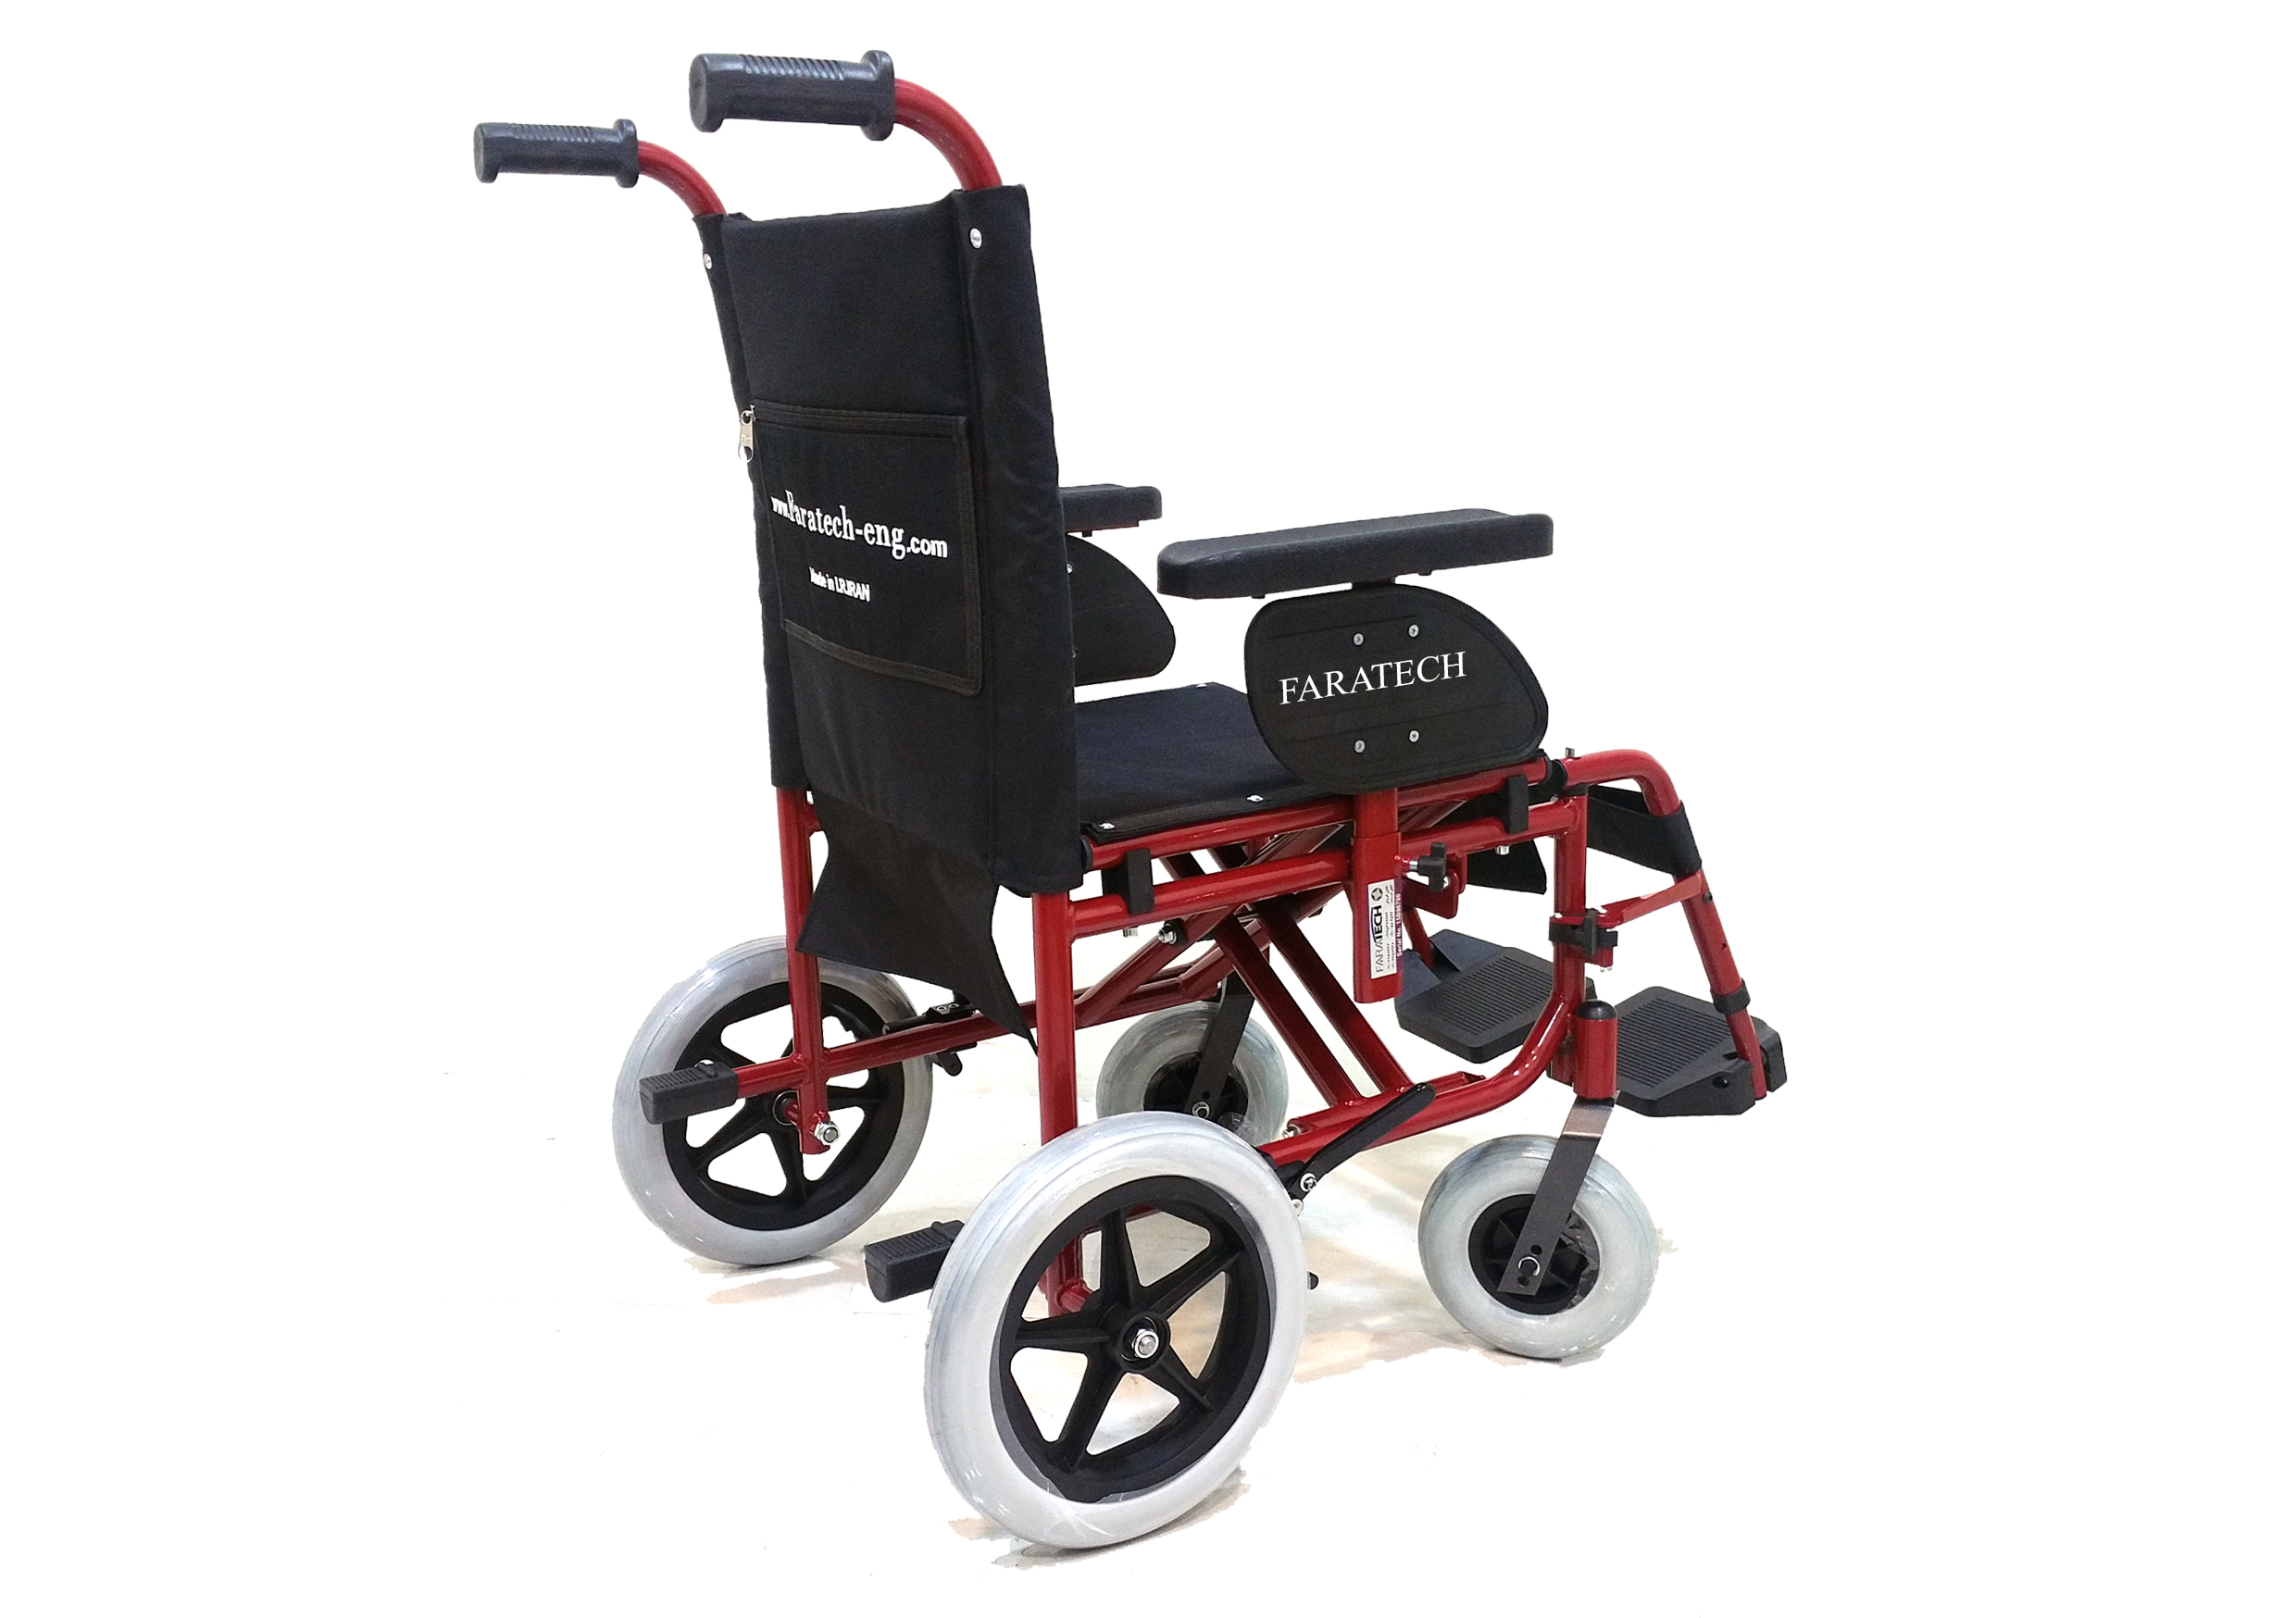  ویلچر دستی آلفا750 ویلچری سبک و مناسب جهت مسافرت و استفاده برای حمل بیمار و سالمندان و معلولین با جاگیری کم